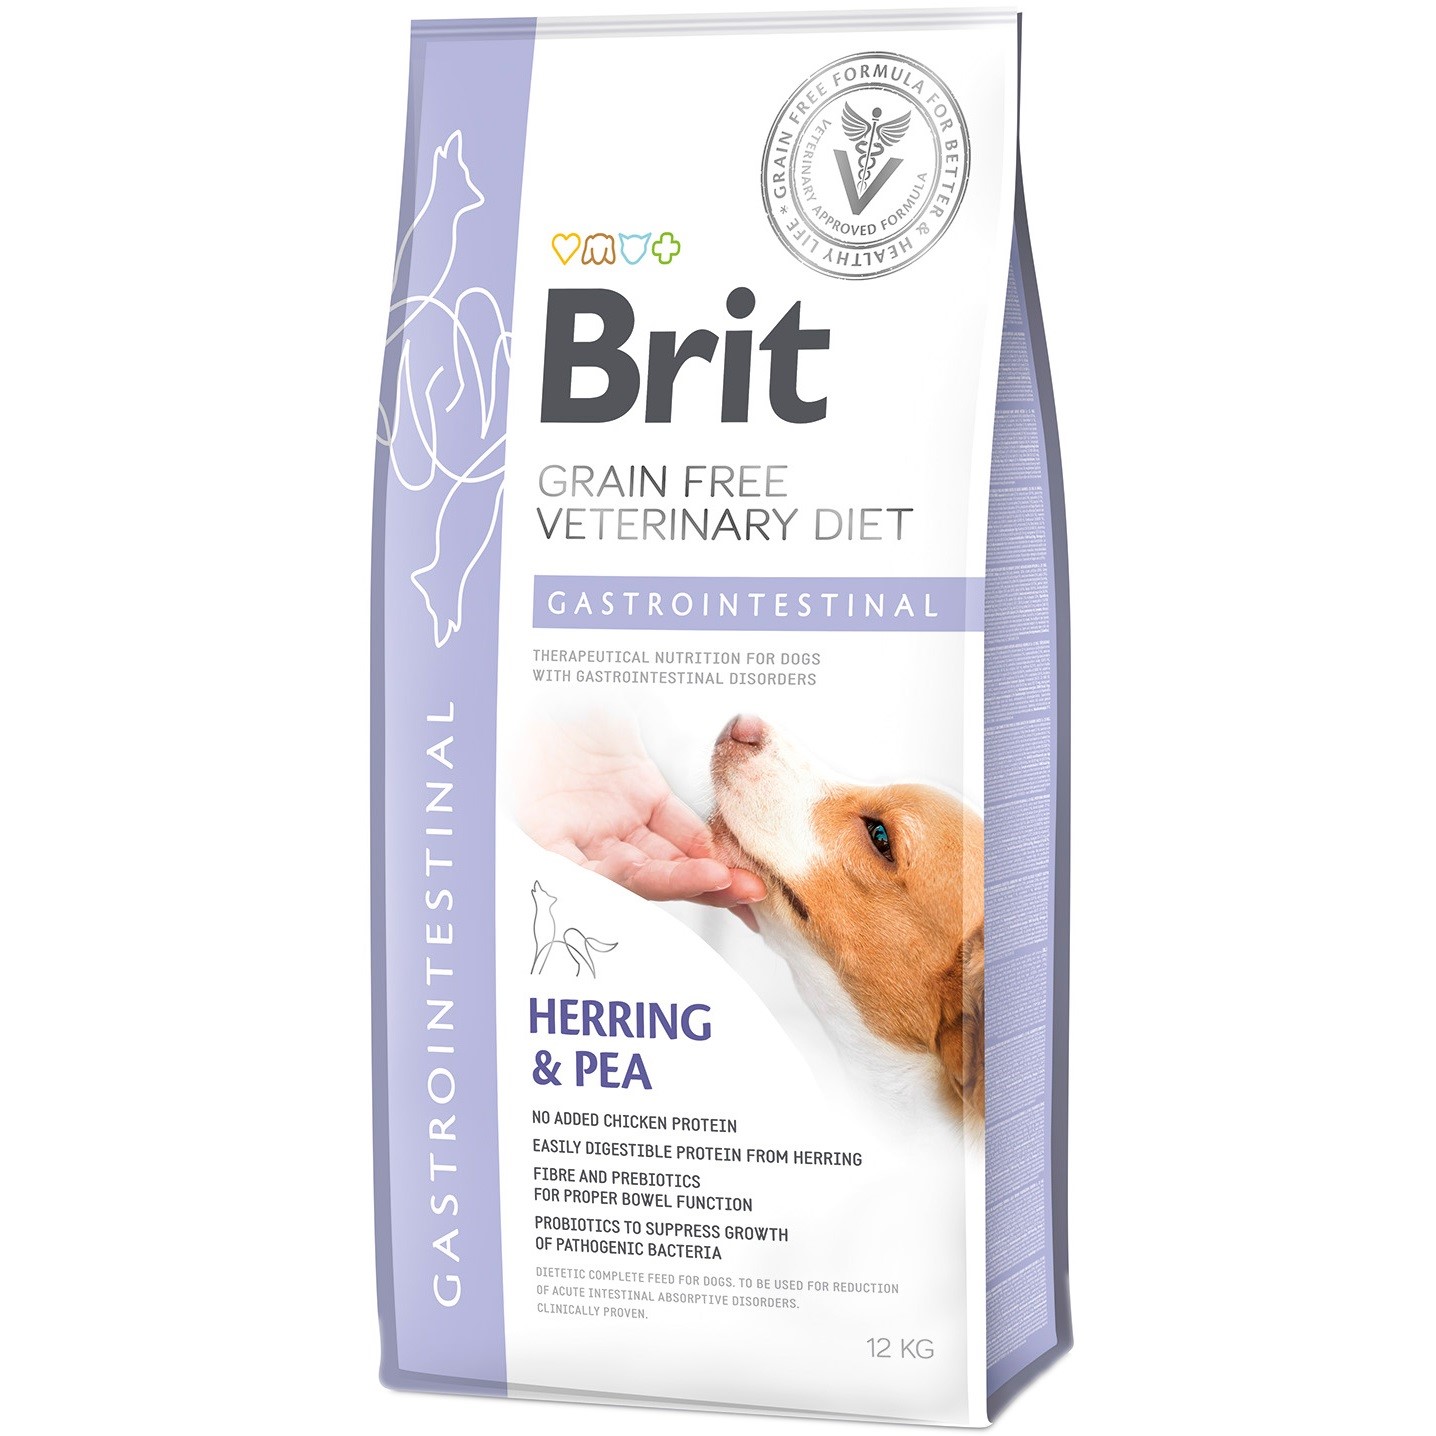 Сухой корм для всех возрастов собак Brit VetDiets Grain Free Gastrointestinal при нарушениях пищеварения с селедкой, лососем и горохом 12 кг - фото 1